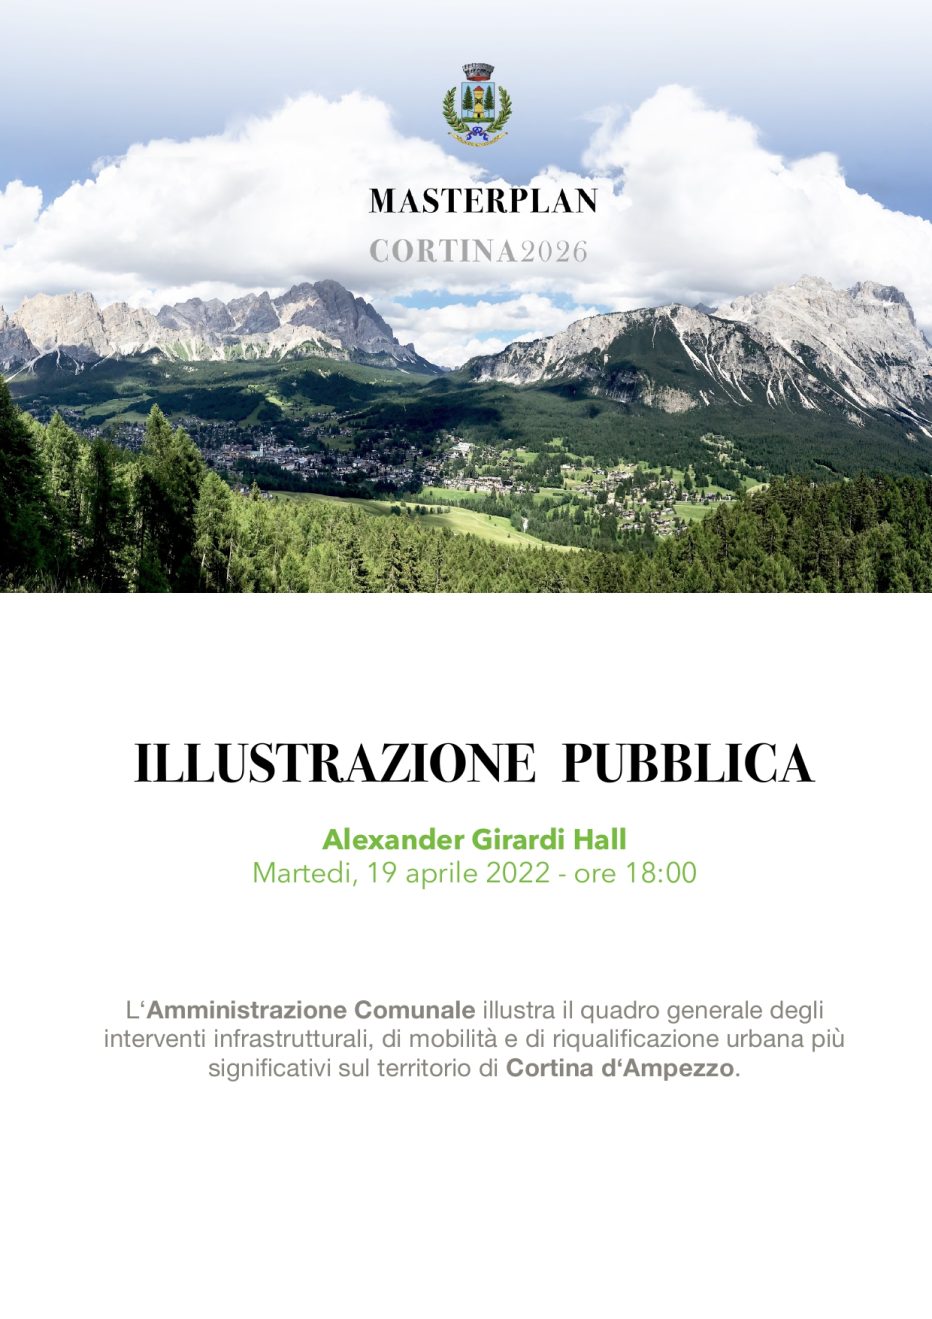 Invito ad Illustrazione Pubblica del Masterplan Cortina 2026 – Alexander Girardi Hall, martedì 19 aprile 2022, ore 18,00